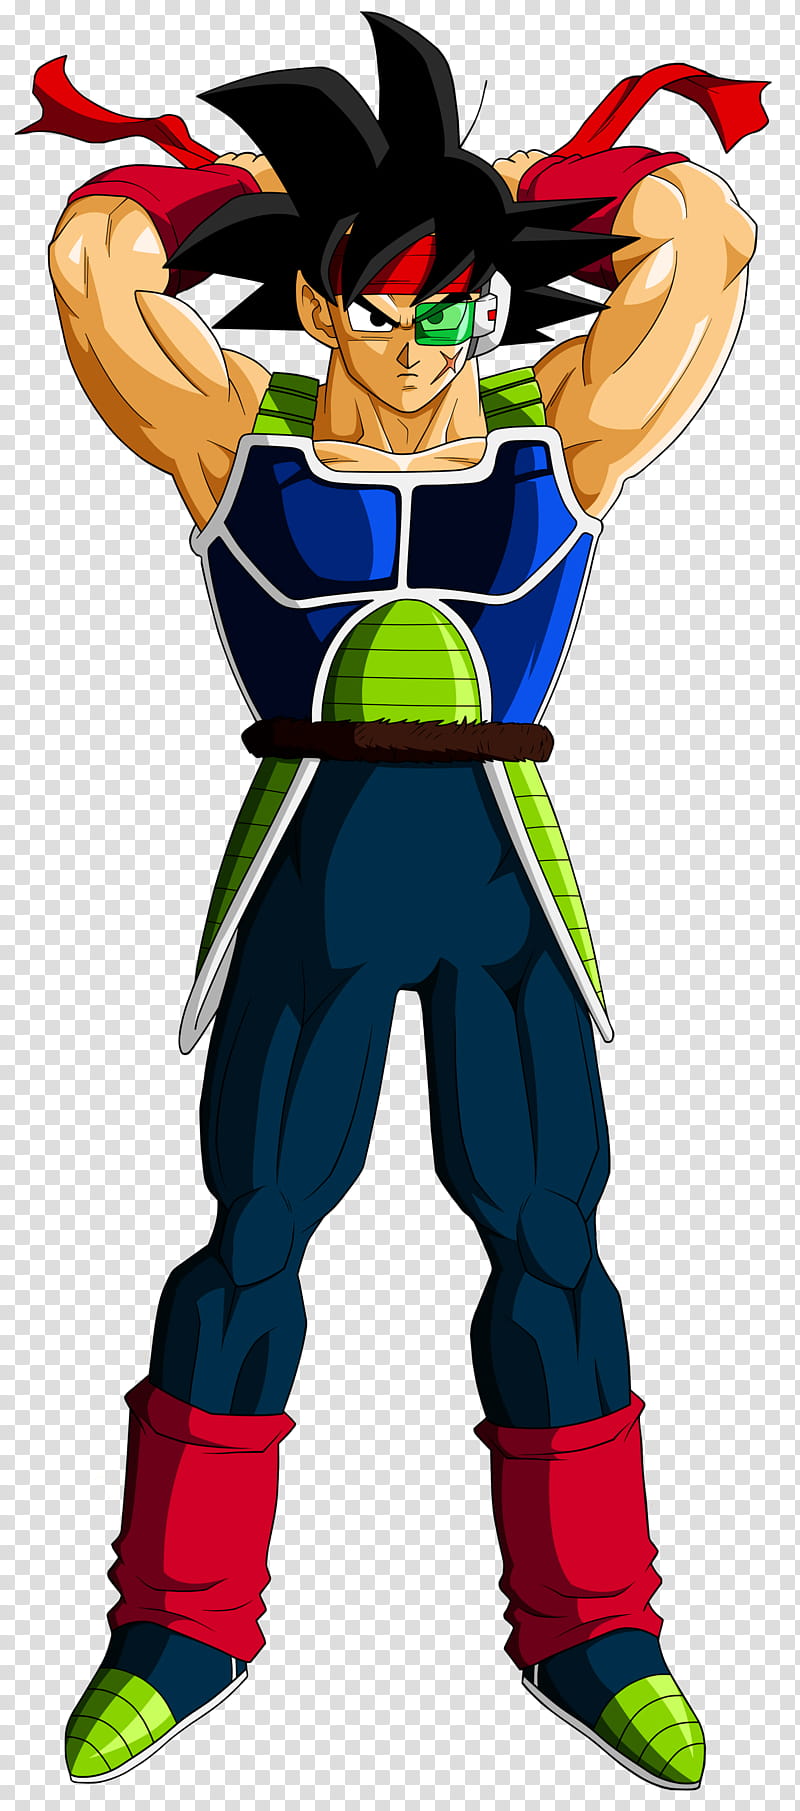 Bardock El Padre de Goku transparent background PNG clipart | HiClipart